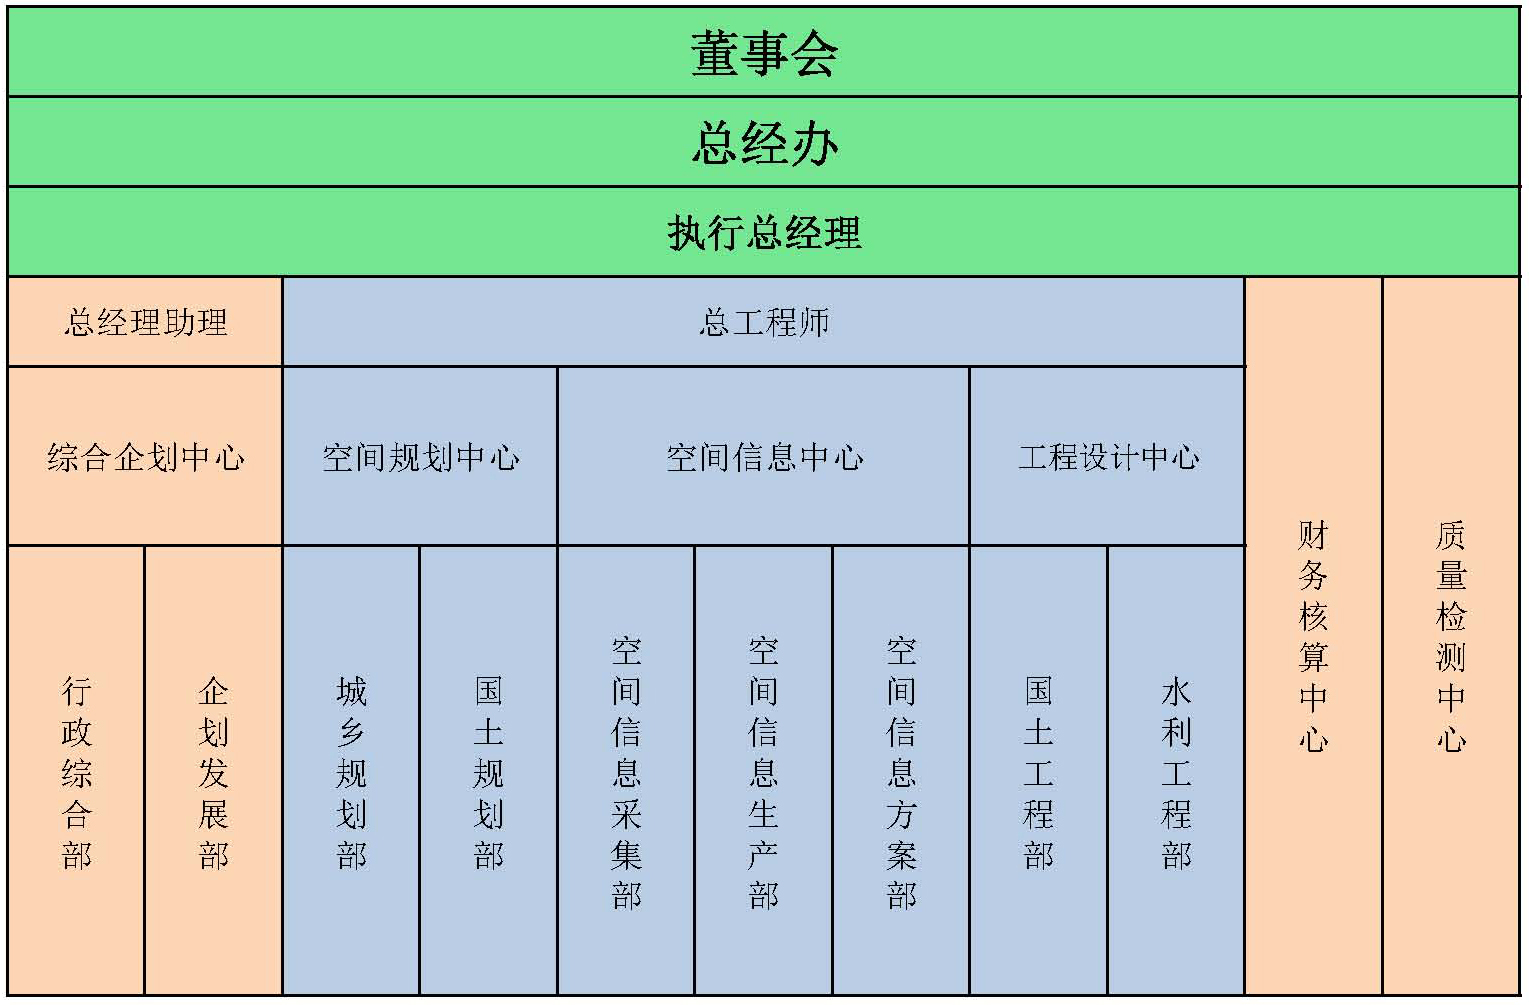 组织结构图0925谭福东CJ.jpg